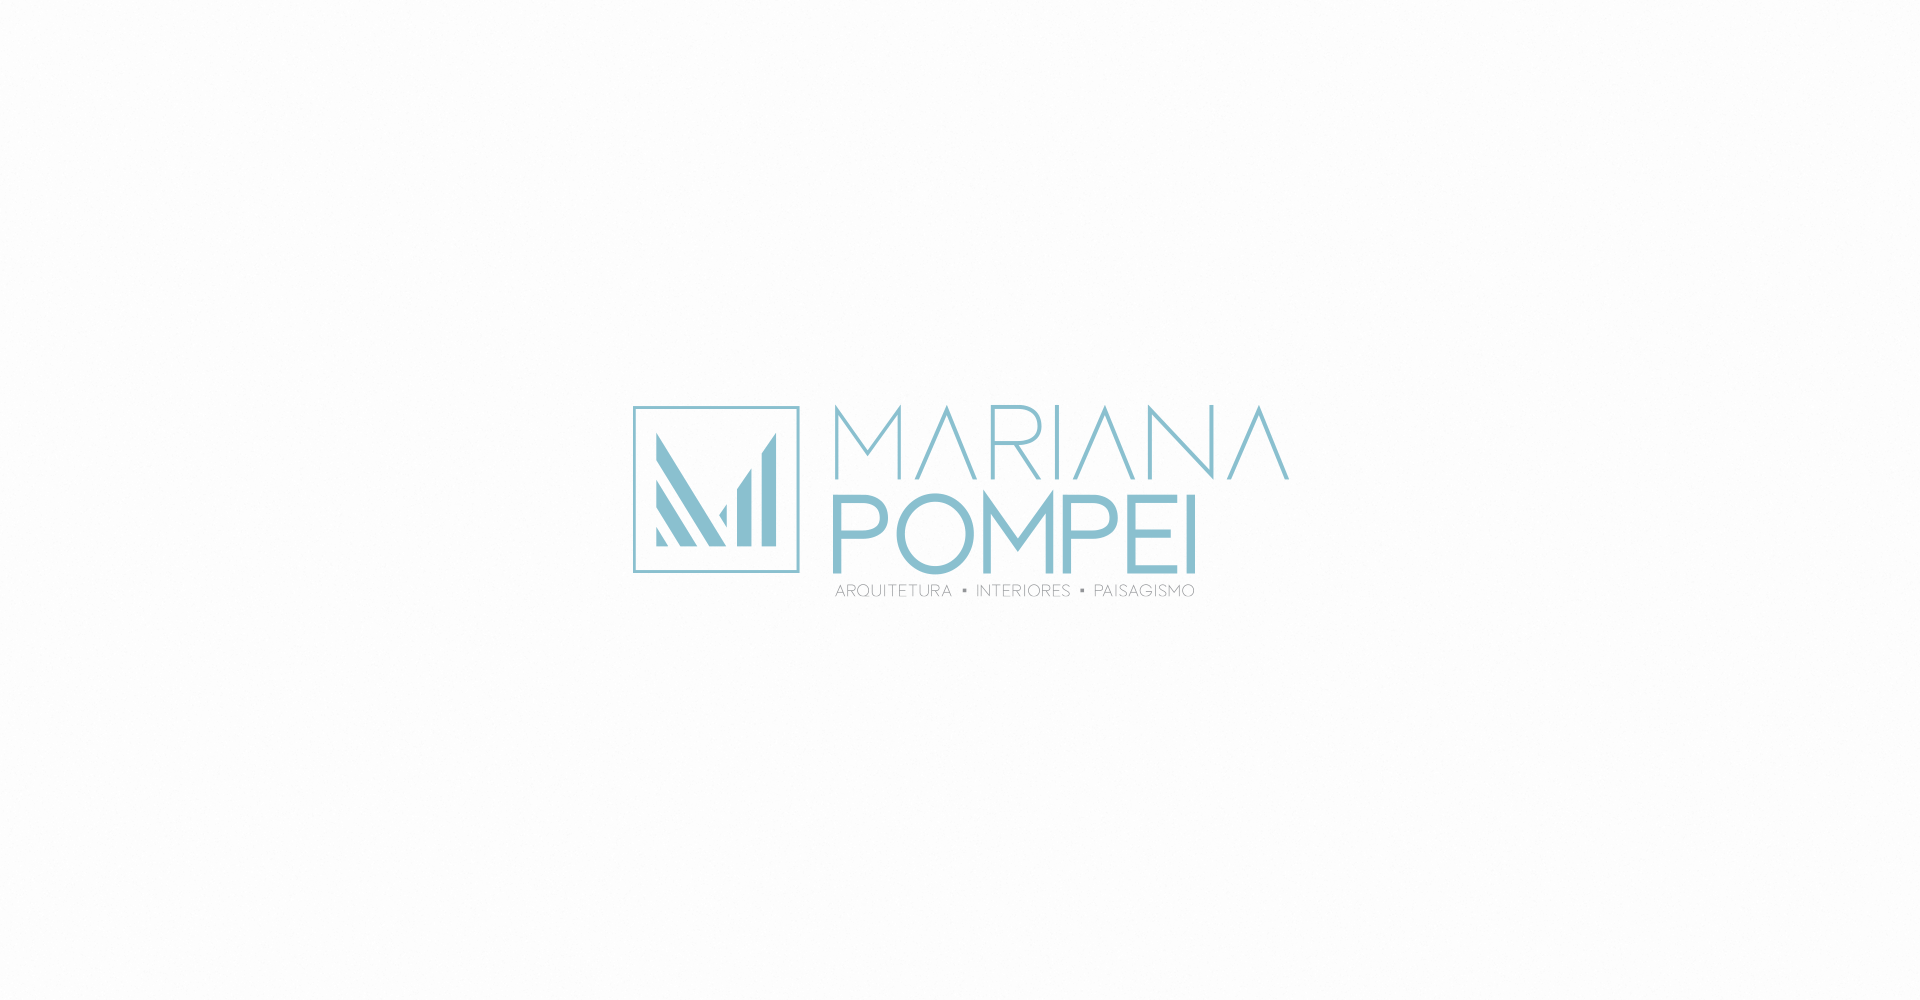 Mariana Pompei – Arquitetura • Interiores • Paisagismo